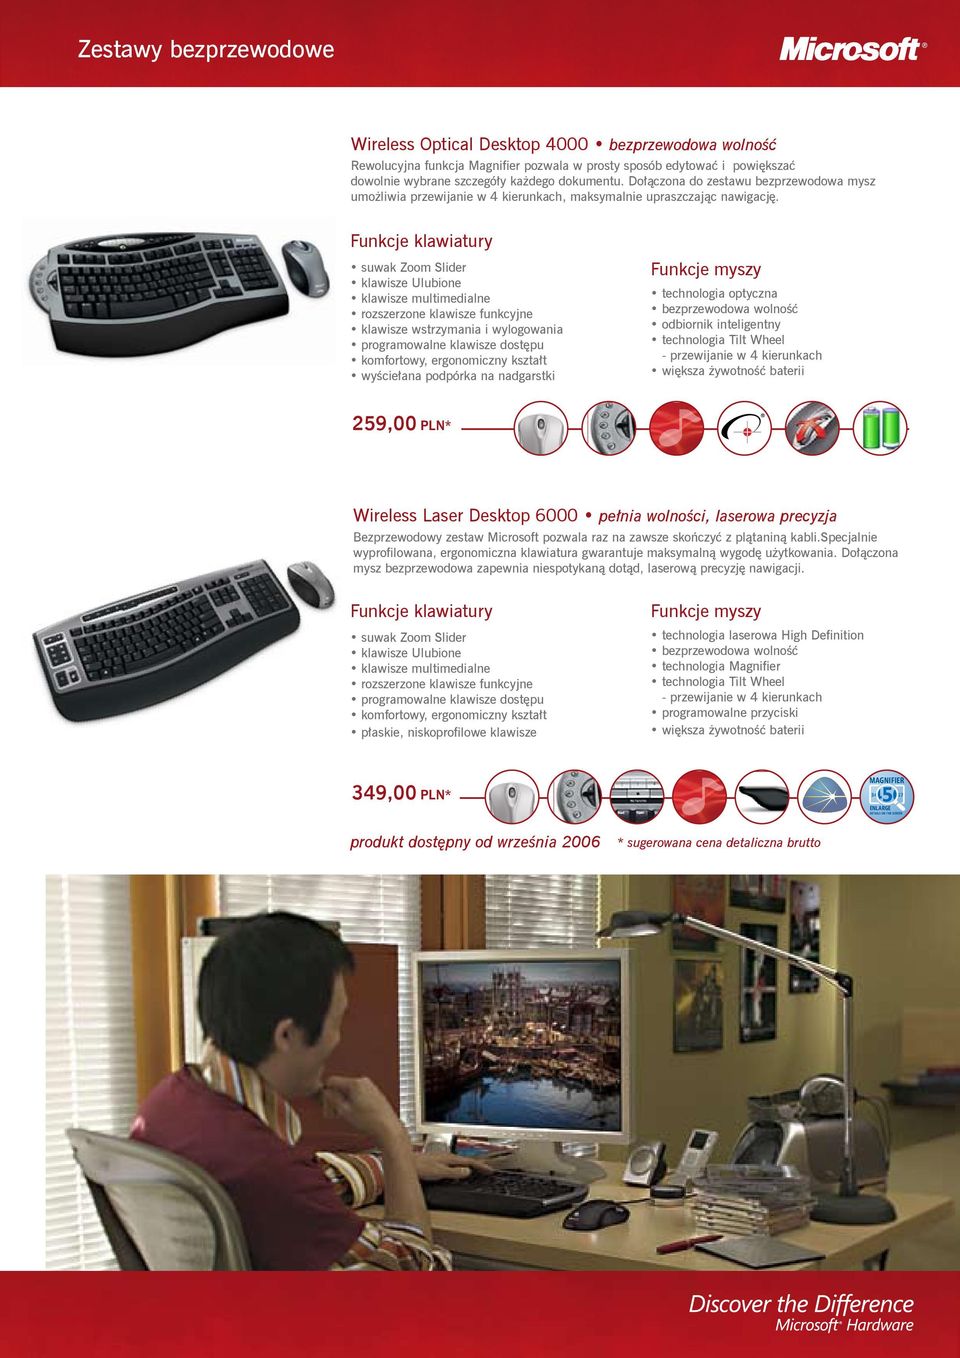 klawiatury suwak Zoom Slider klawisze Ulubione rozszerzone klawisze funkcyjne klawisze wstrzymania i wylogowania programowalne klawisze dostępu komfortowy, ergonomiczny kształt wyściełana podpórka na